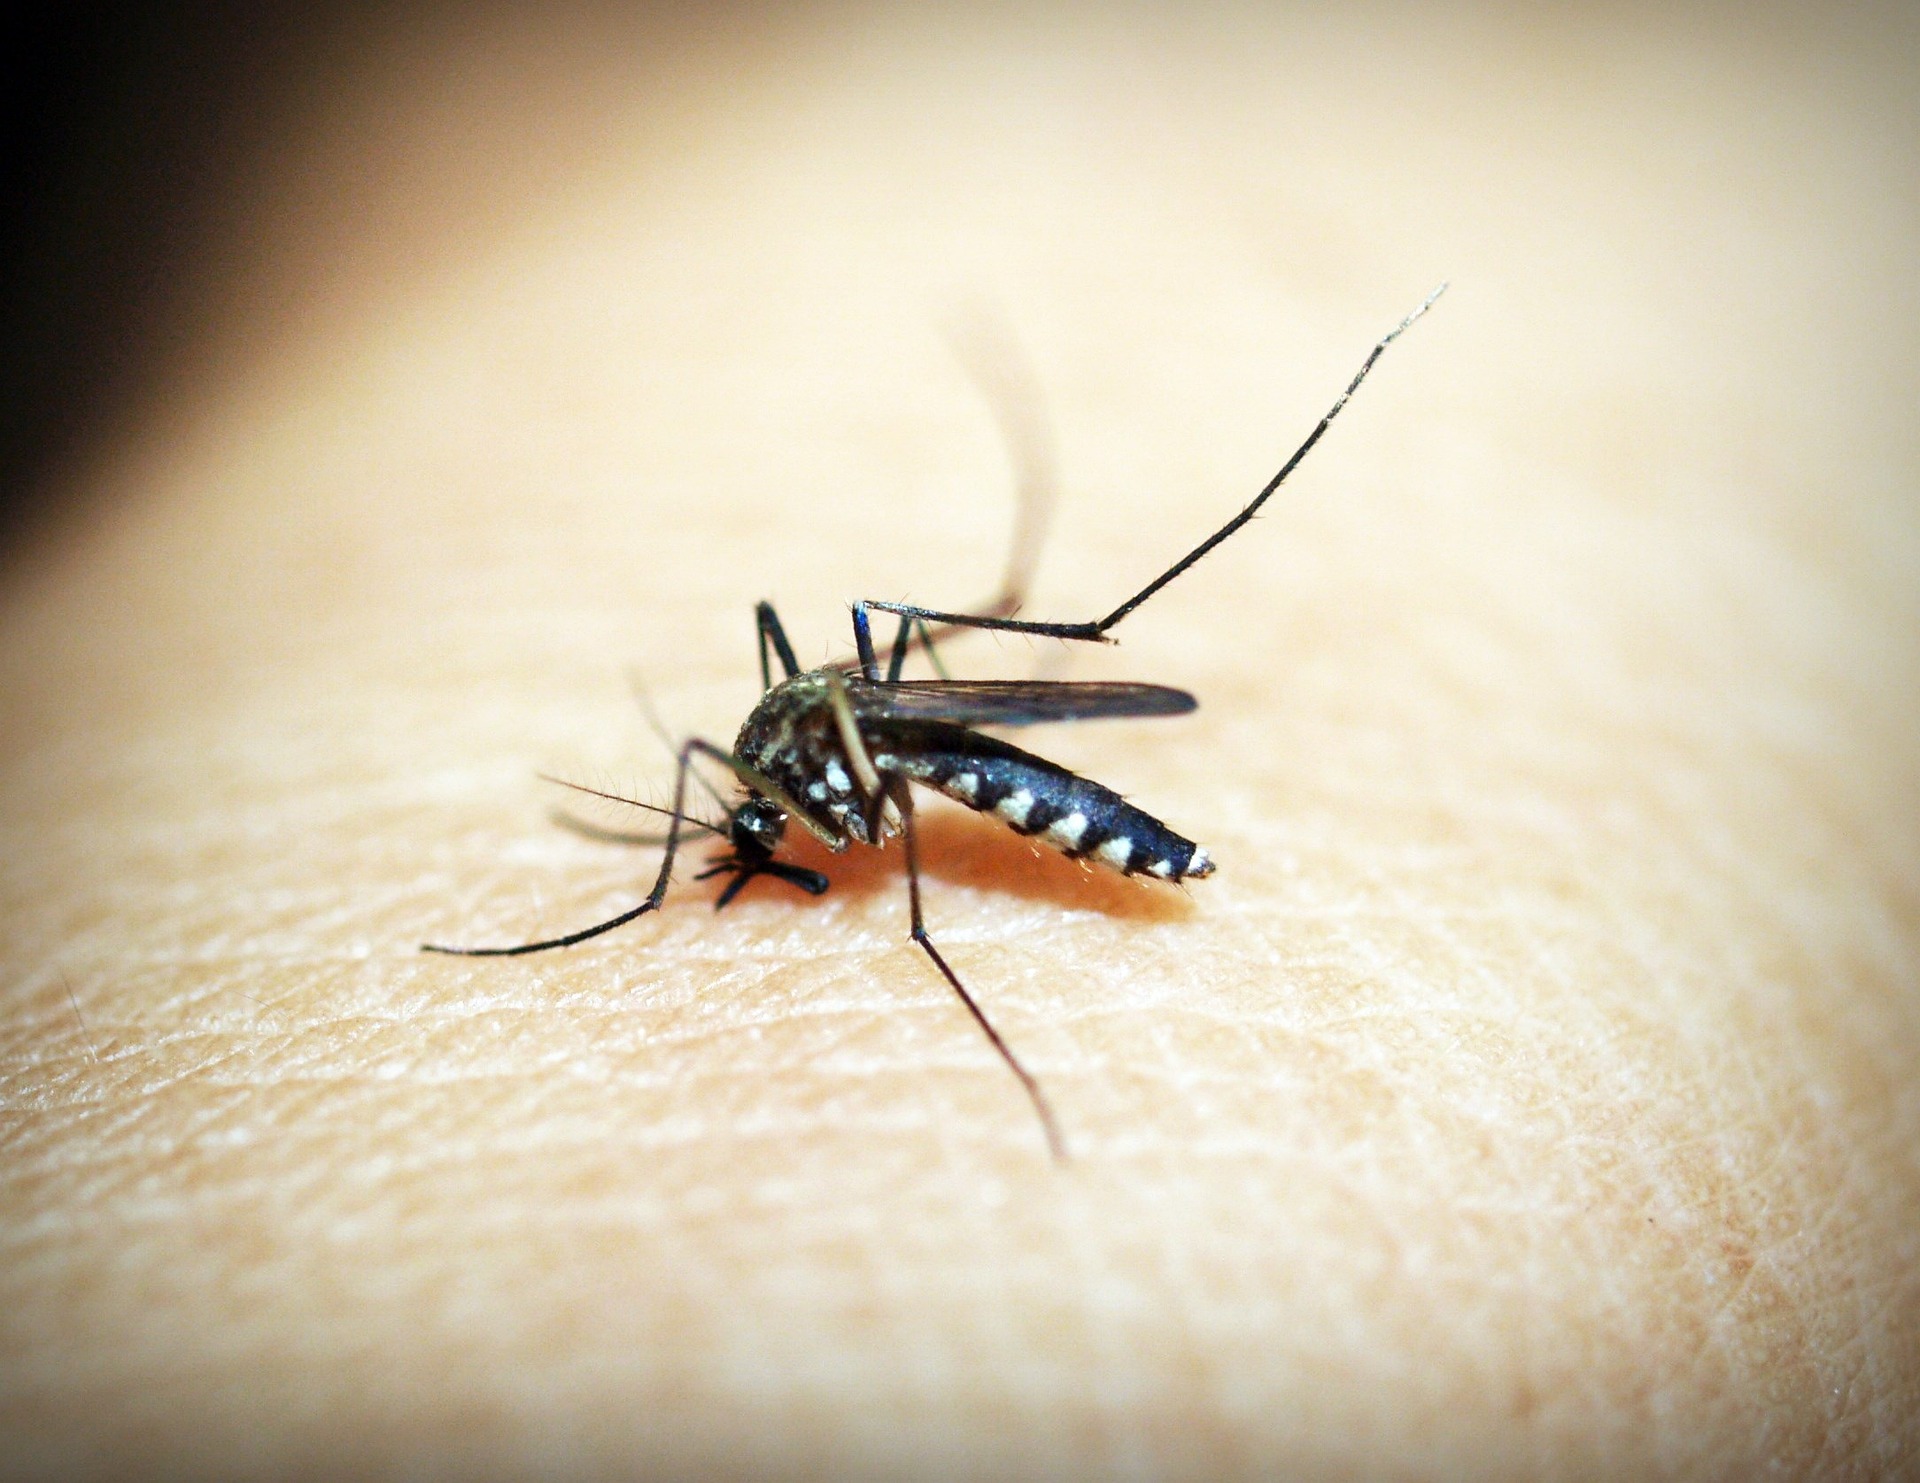 Dengue Fever Signs and Symptoms